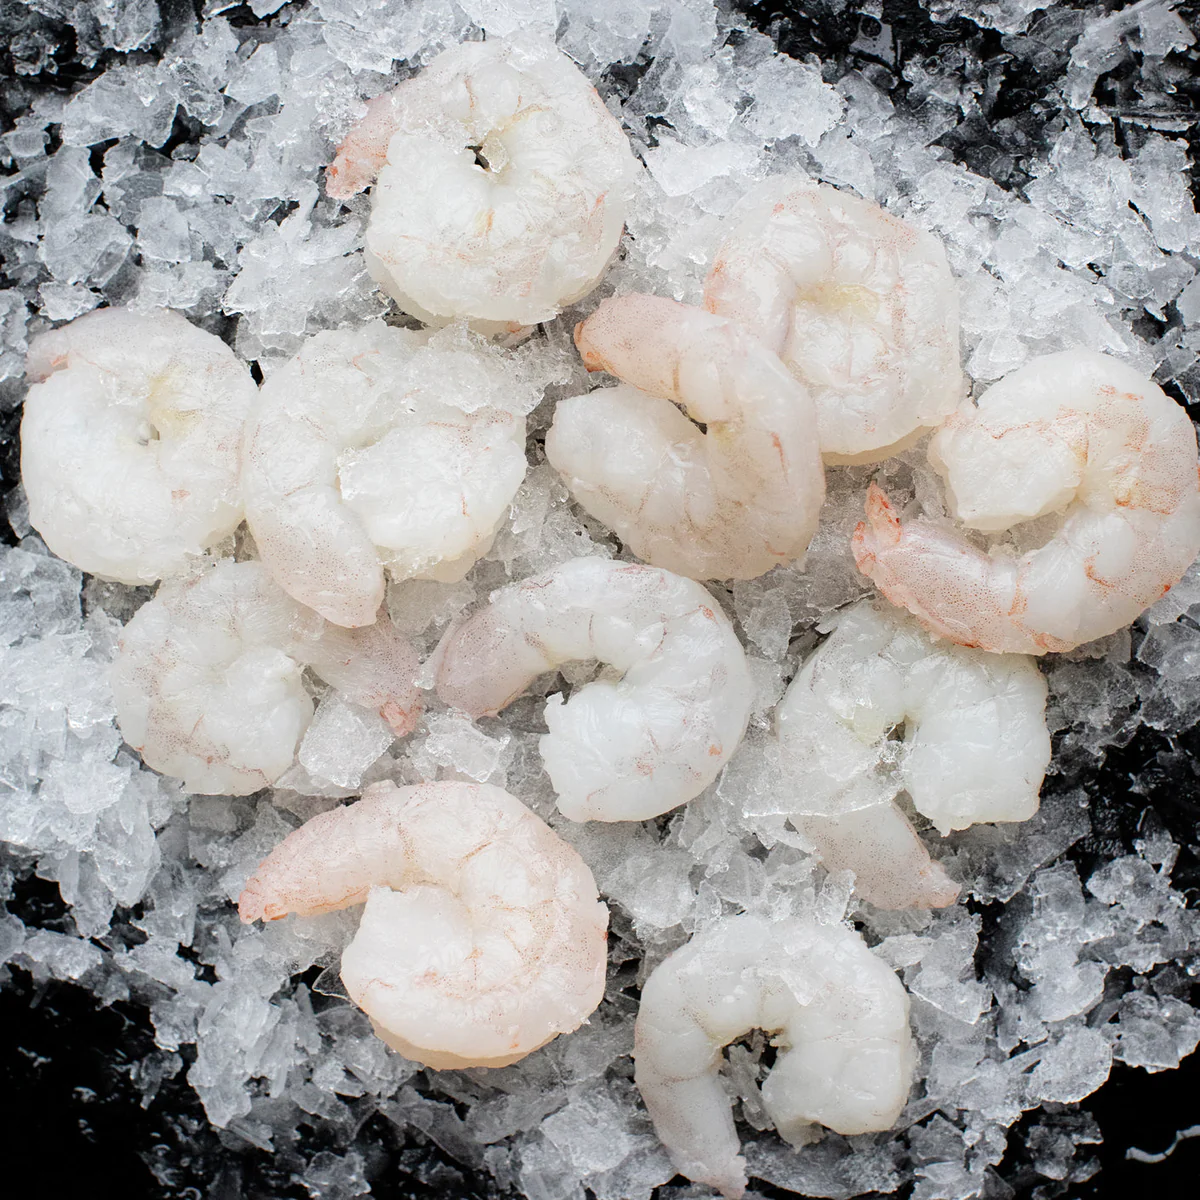 wholesale gulf shrimp, peeled & deveined shrimp